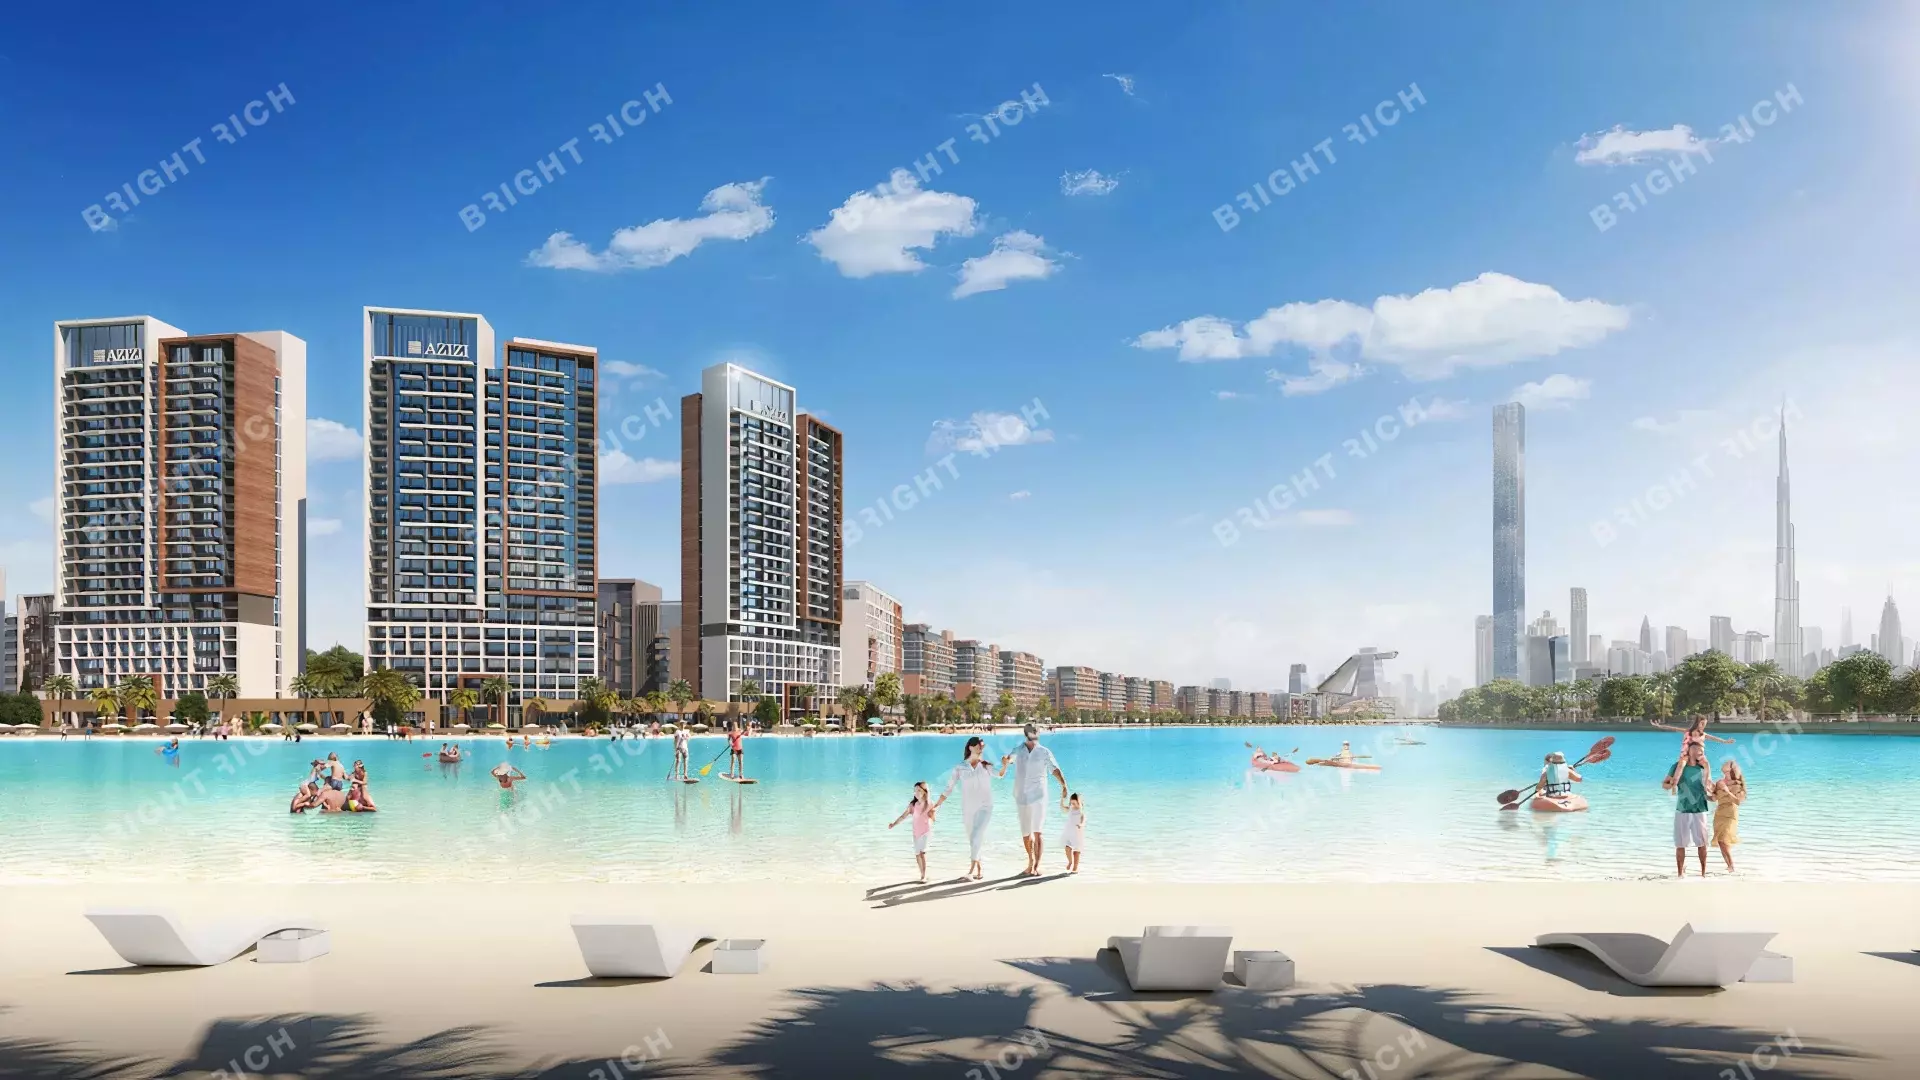 Azizi Riviera Building 25, apart complex in Dubai - 1